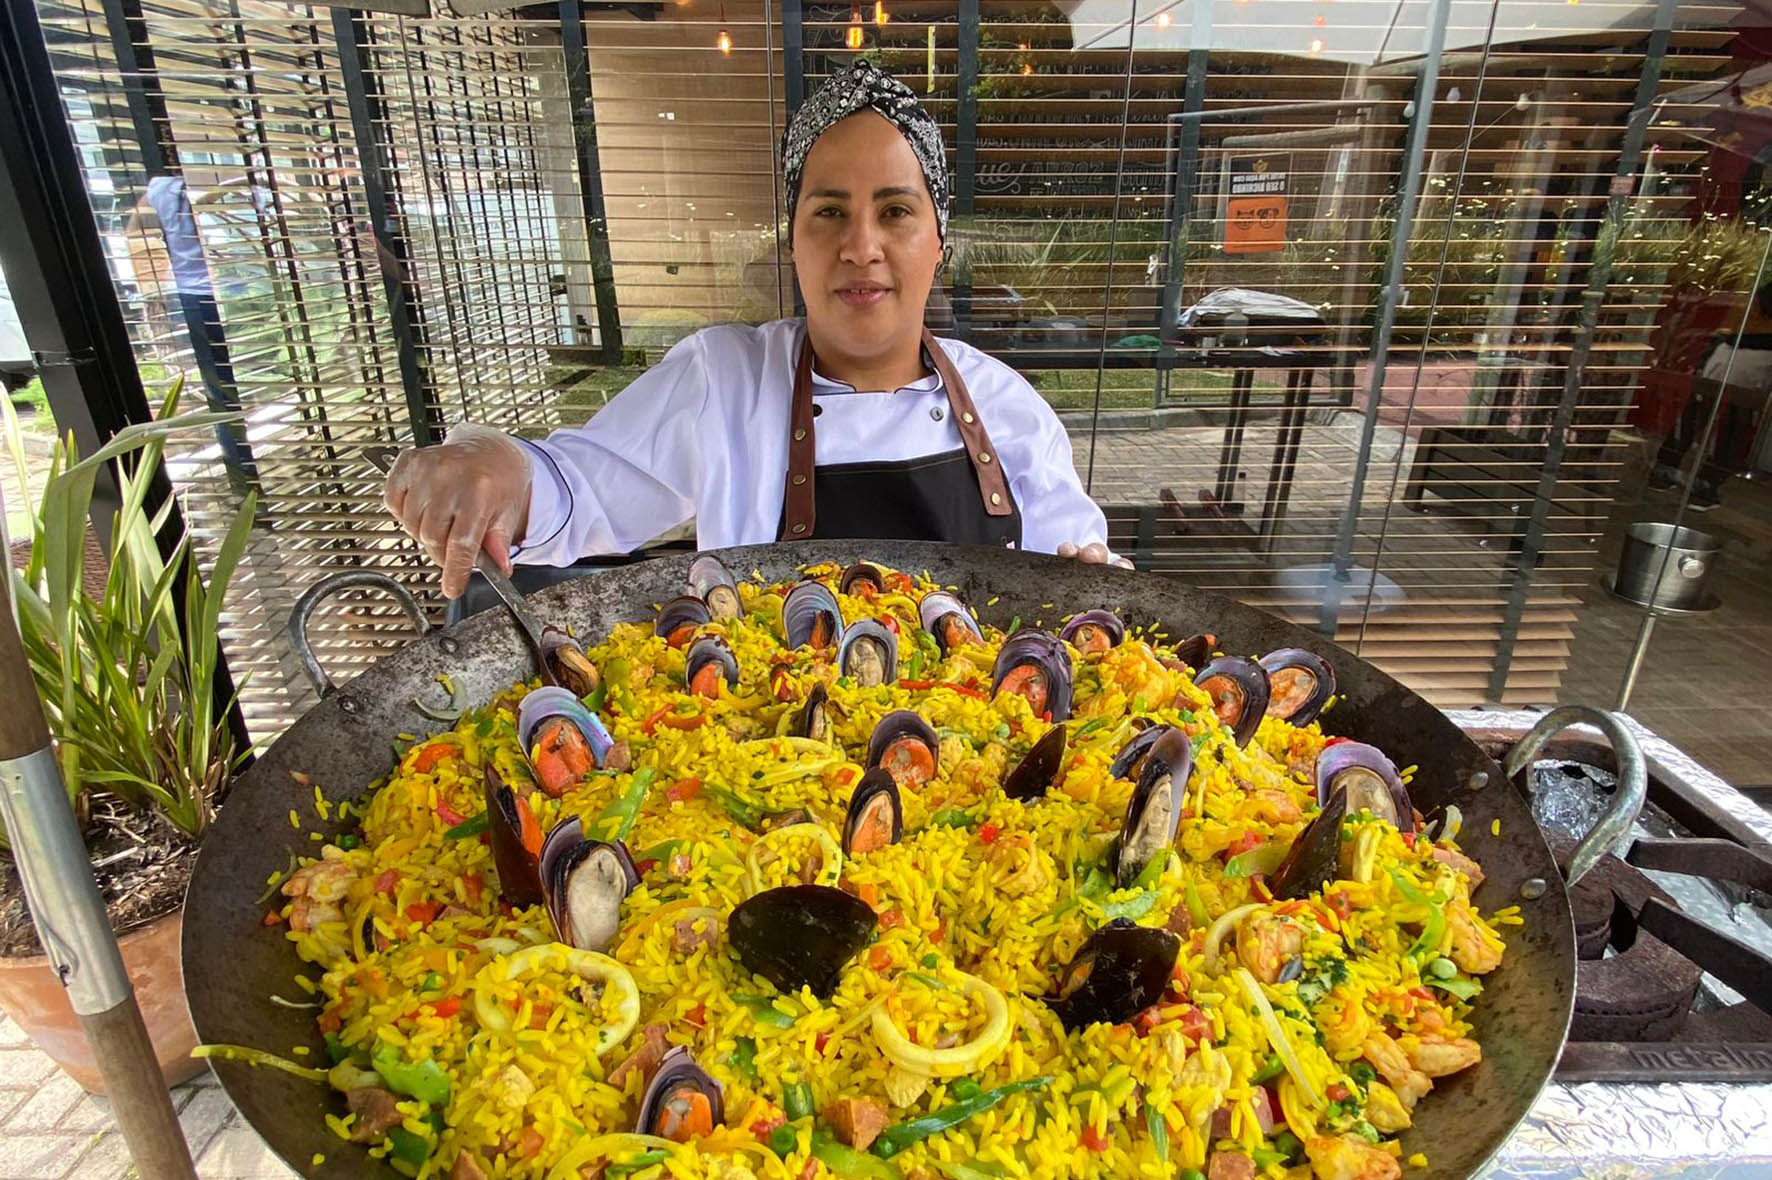 Aula show gratuita na Mercadoteca ensina a fazer paella